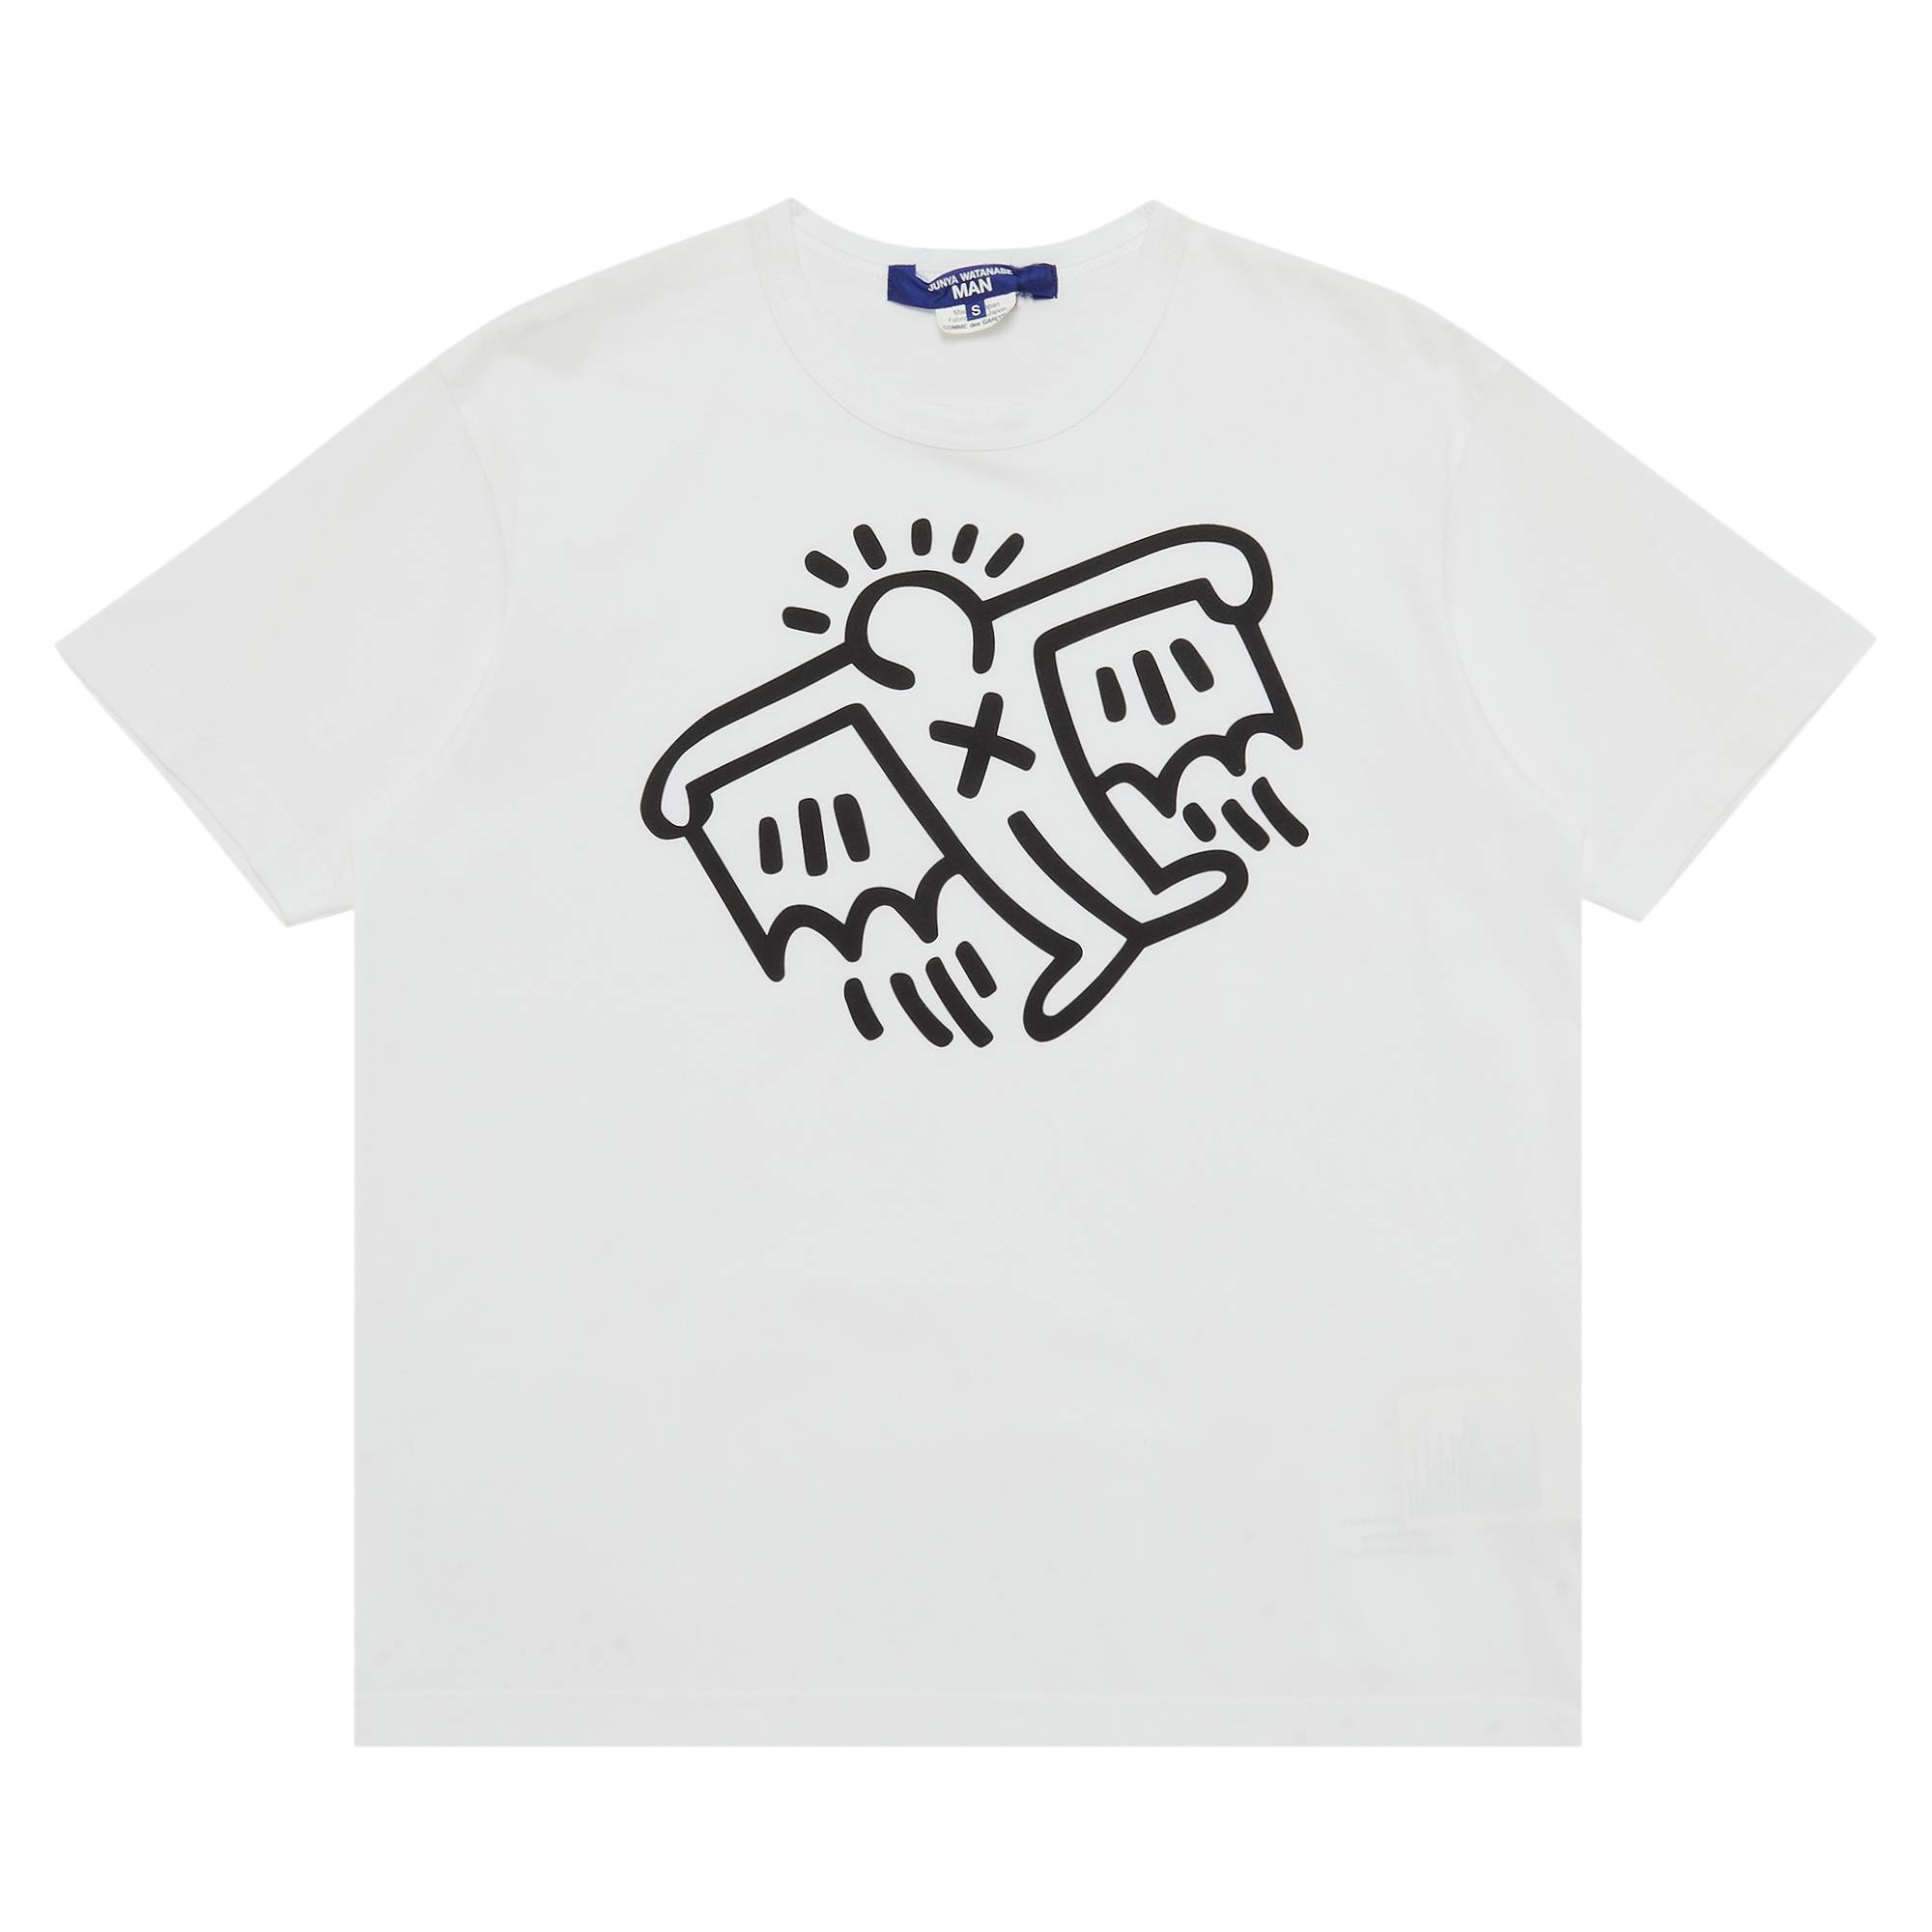 Junya Watanabe x Keith Haring Print Tee 'White' - 1